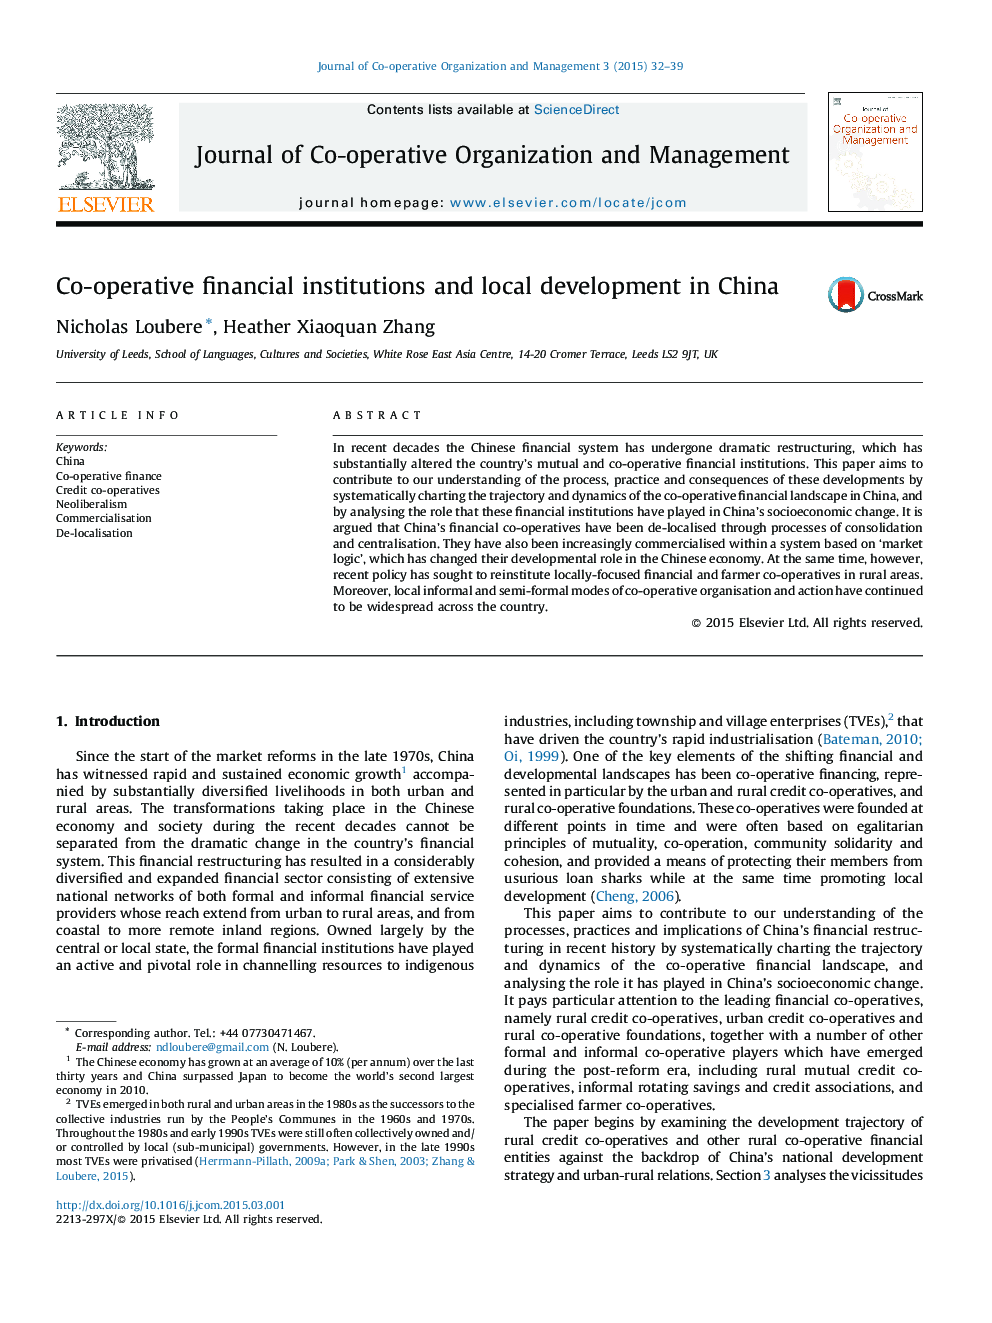 موسسات مالی تعاونی و توسعه محلی در چین